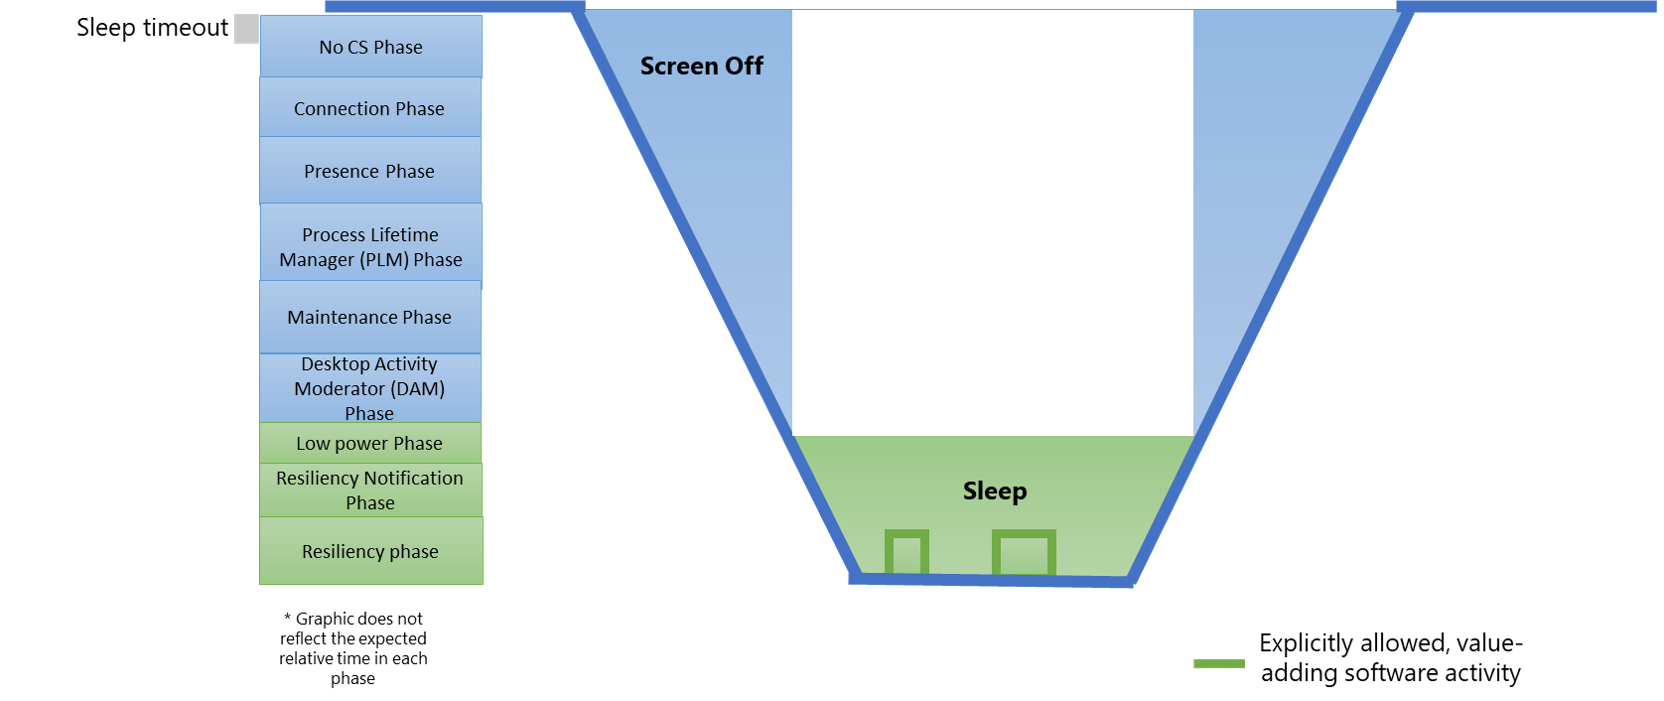 figura 1: Diagrama mostrando estados modernos do sistema em espera e sua relação com fases de software